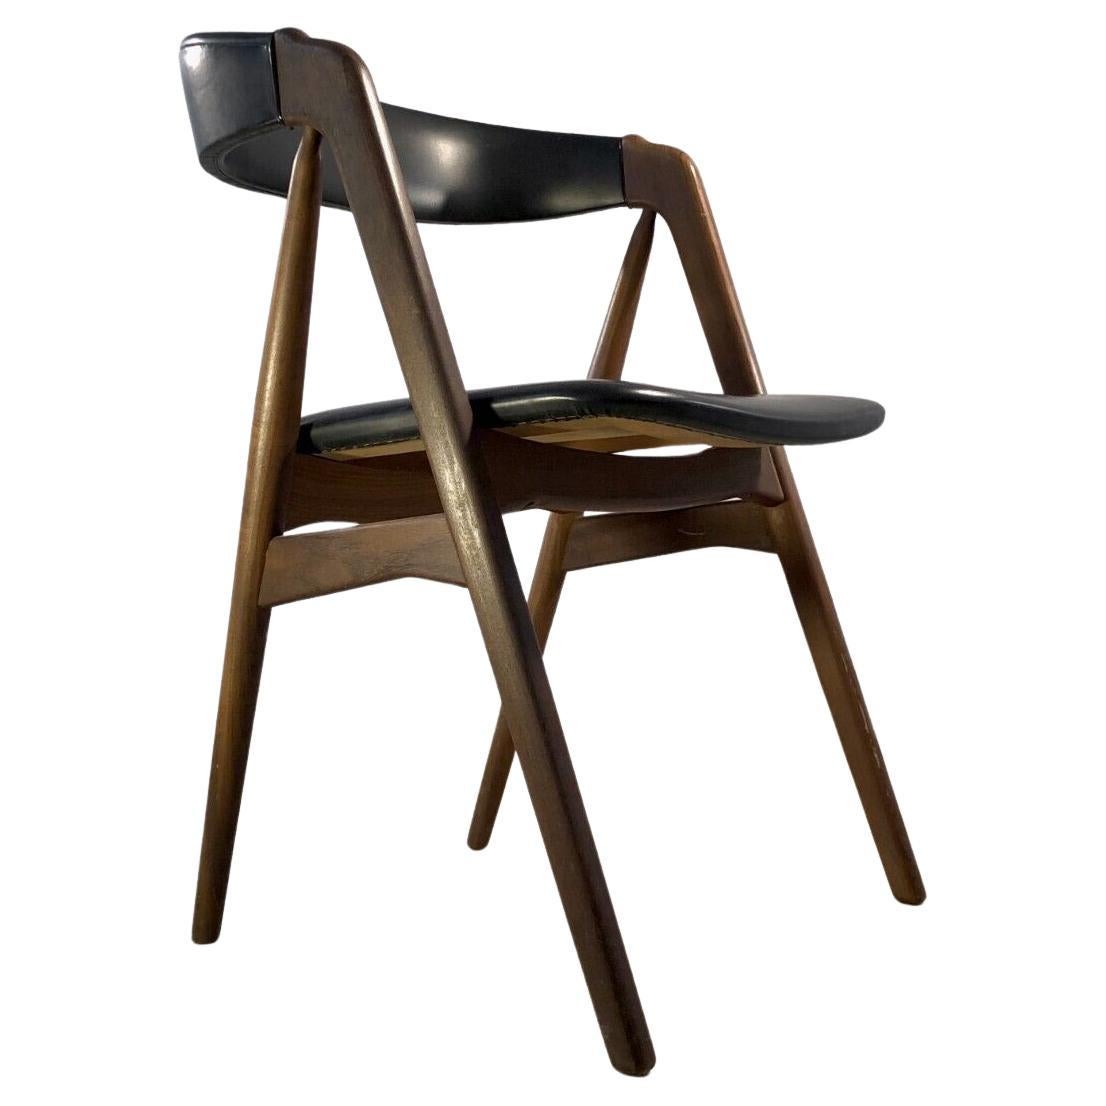 Ein erstaunlicher, schlanker und eleganter Stuhl mit Kompassbeinen, modernistisch, freie Form, dänisch, skandinavisch, Kompassbeine und Struktur aus Palisander, Sitz aus schwarzem Kunstleder, seltene 